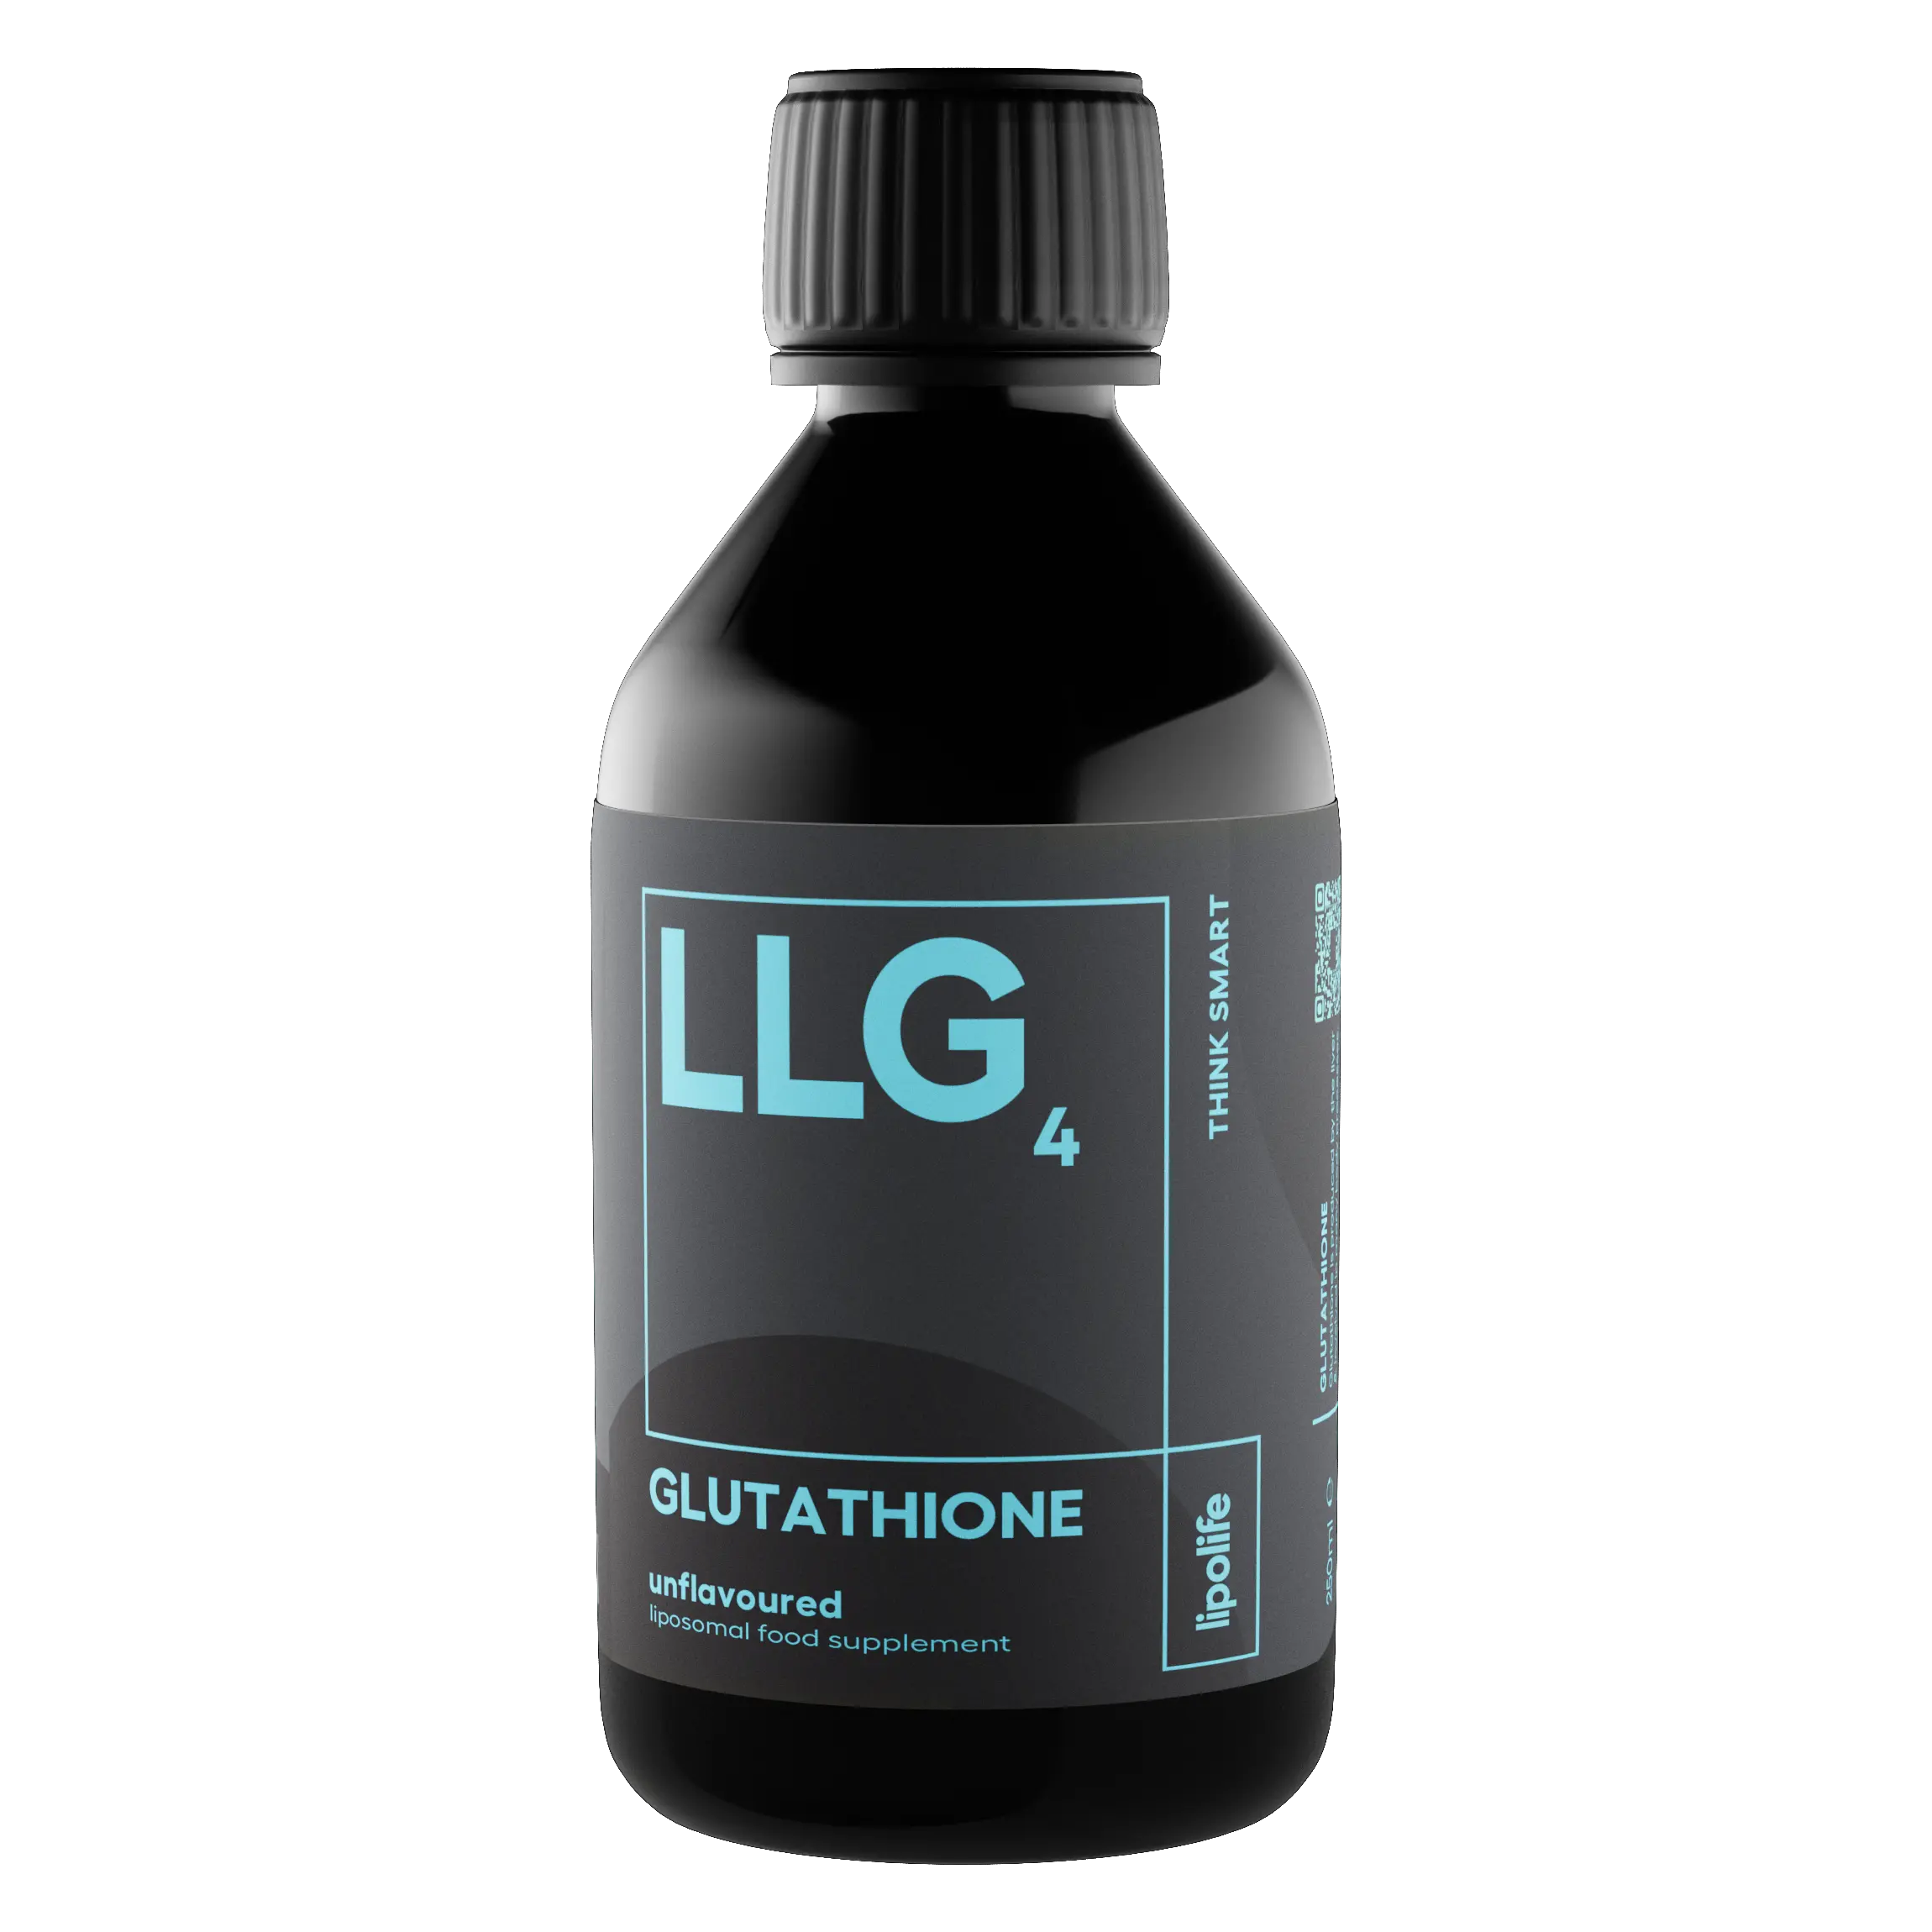 LLG4 - течен и липозомен глутатион, без вкус